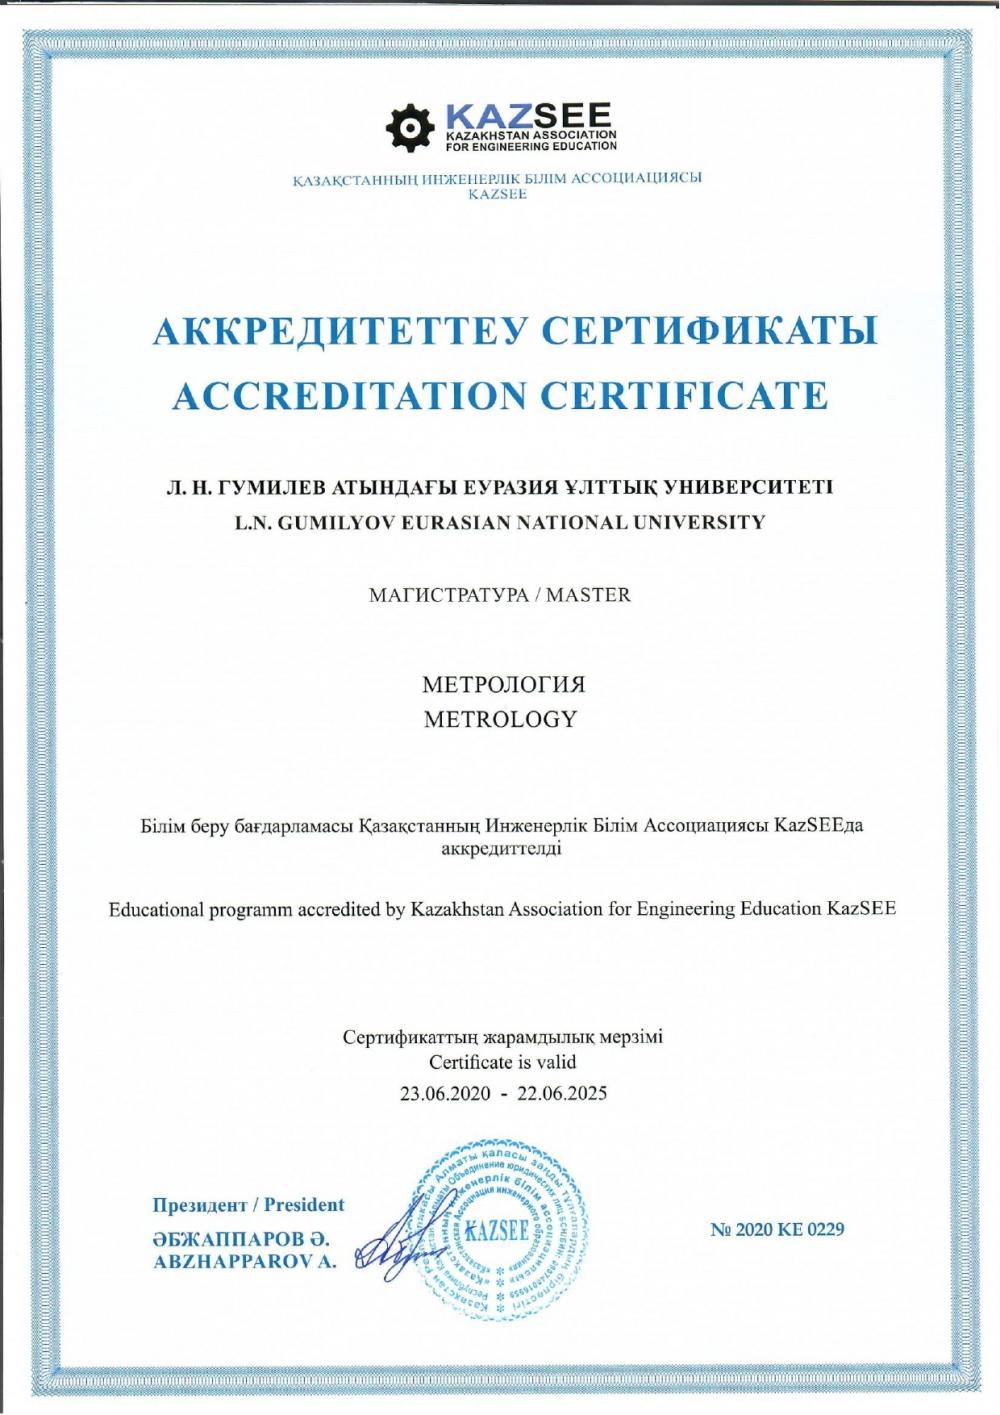 Образовательные программы «Метрология» (бакалавриат) и «Метрология» (магистратура) успешно прошли аккредитацию в агентстве Kazsee.